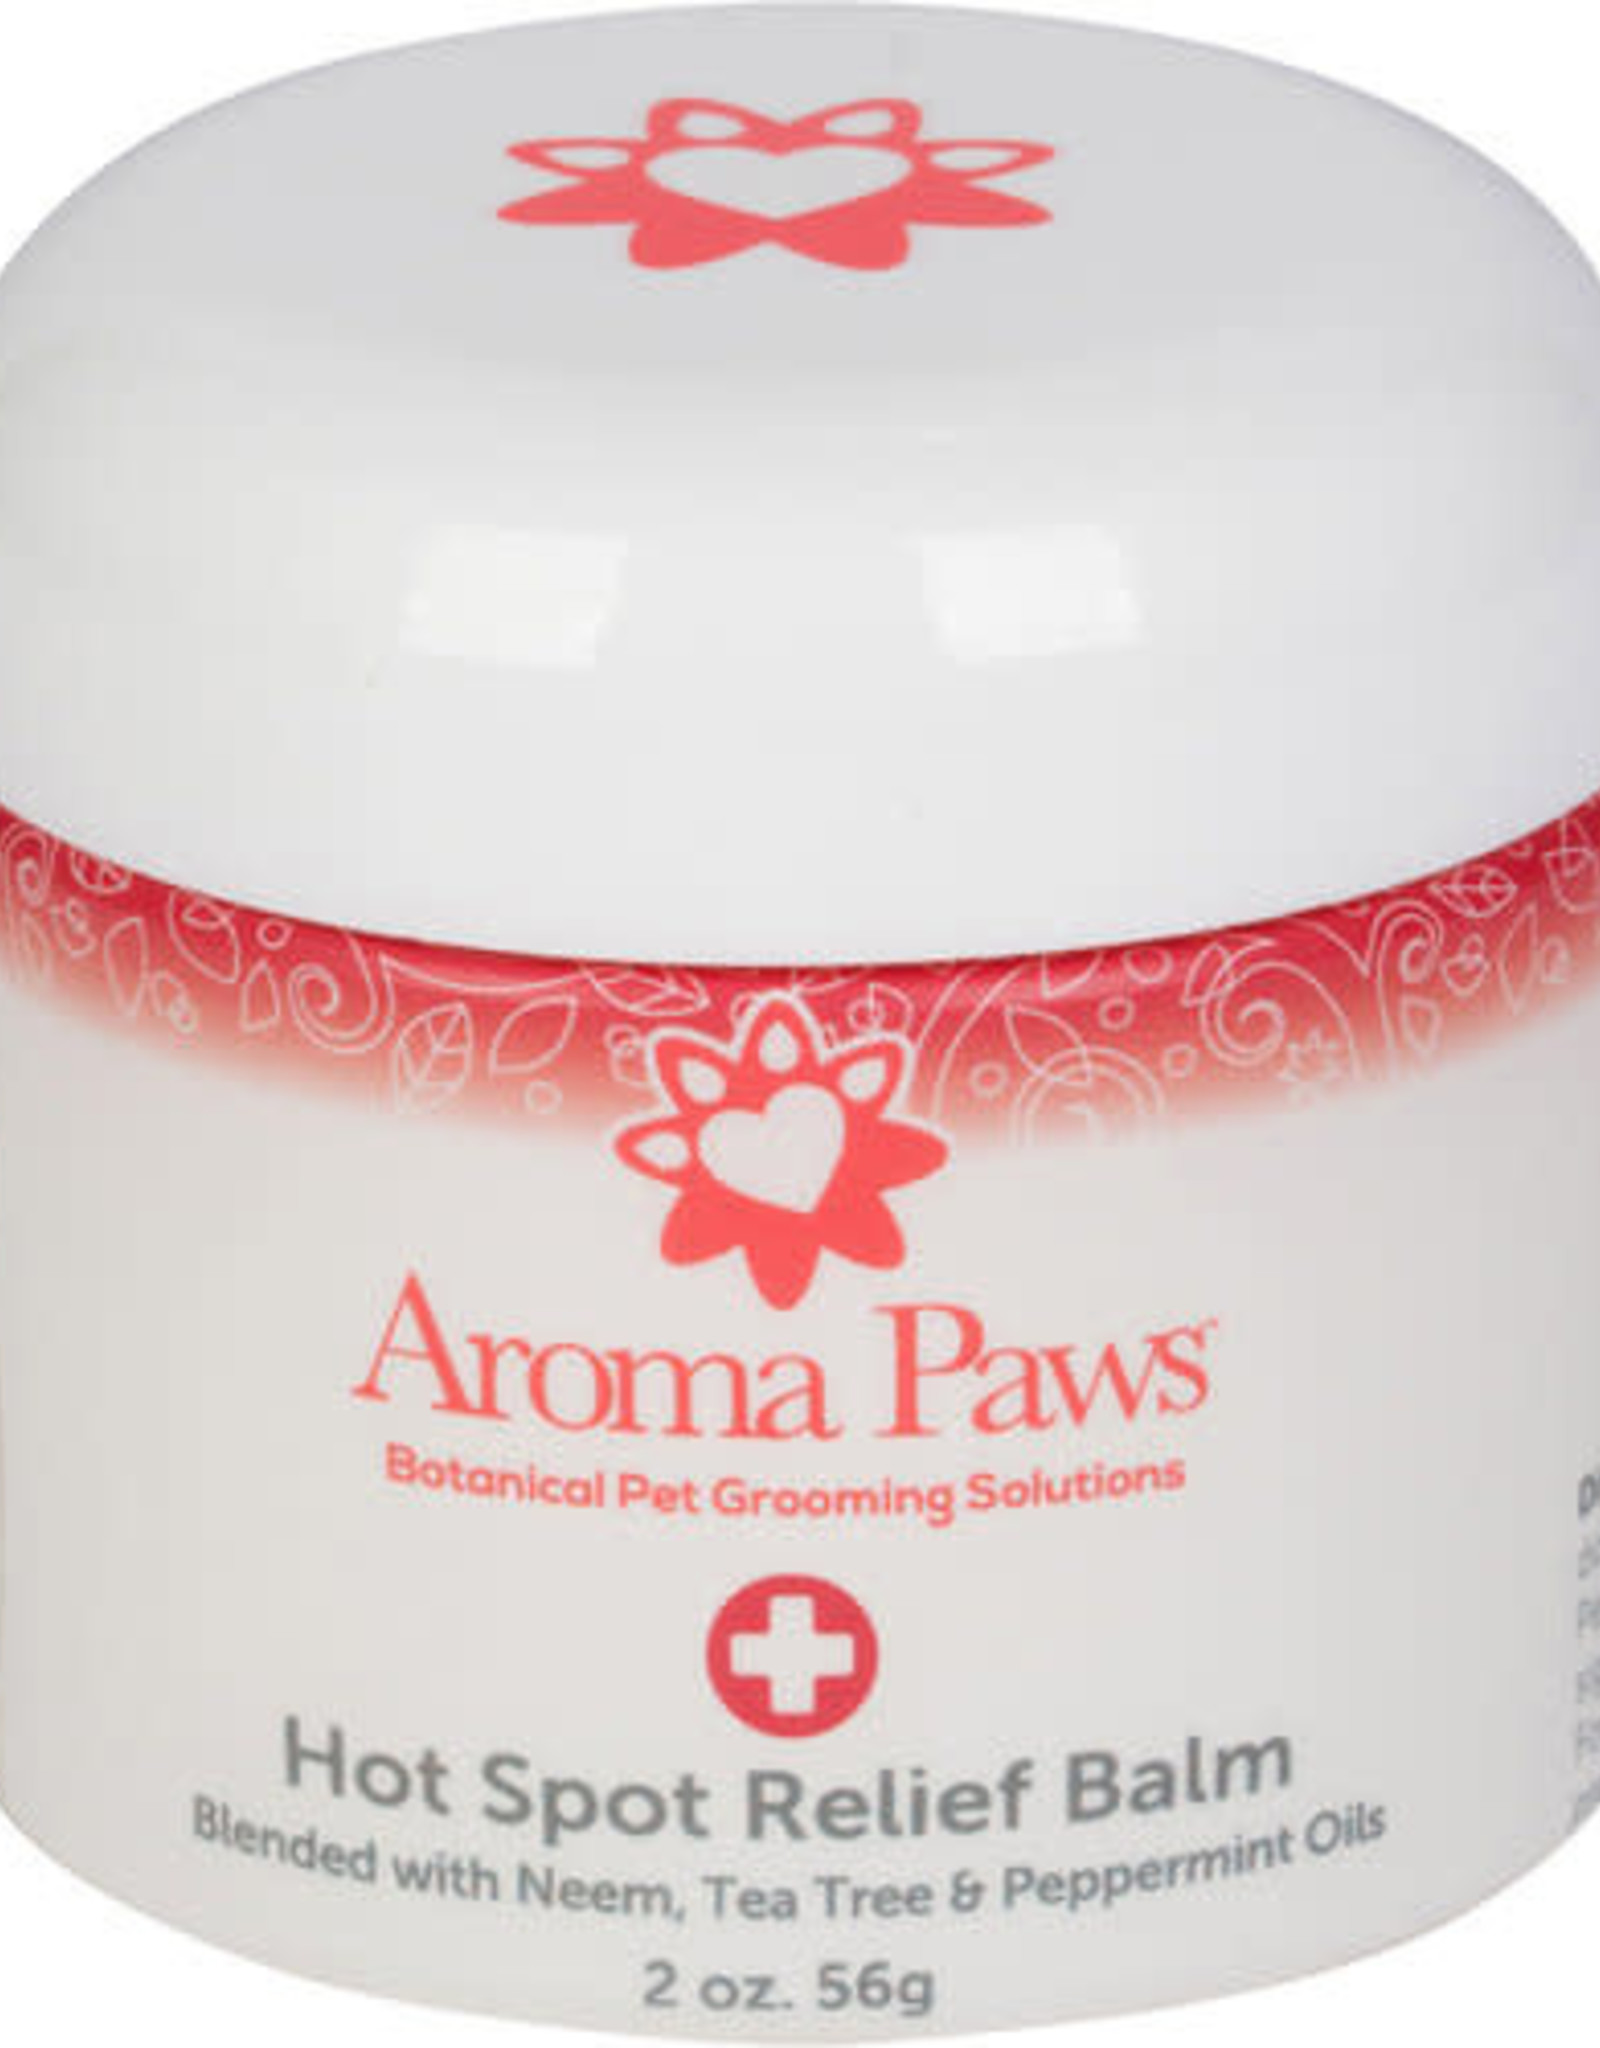 Aroma Paws Hot Spot Balm 2oz